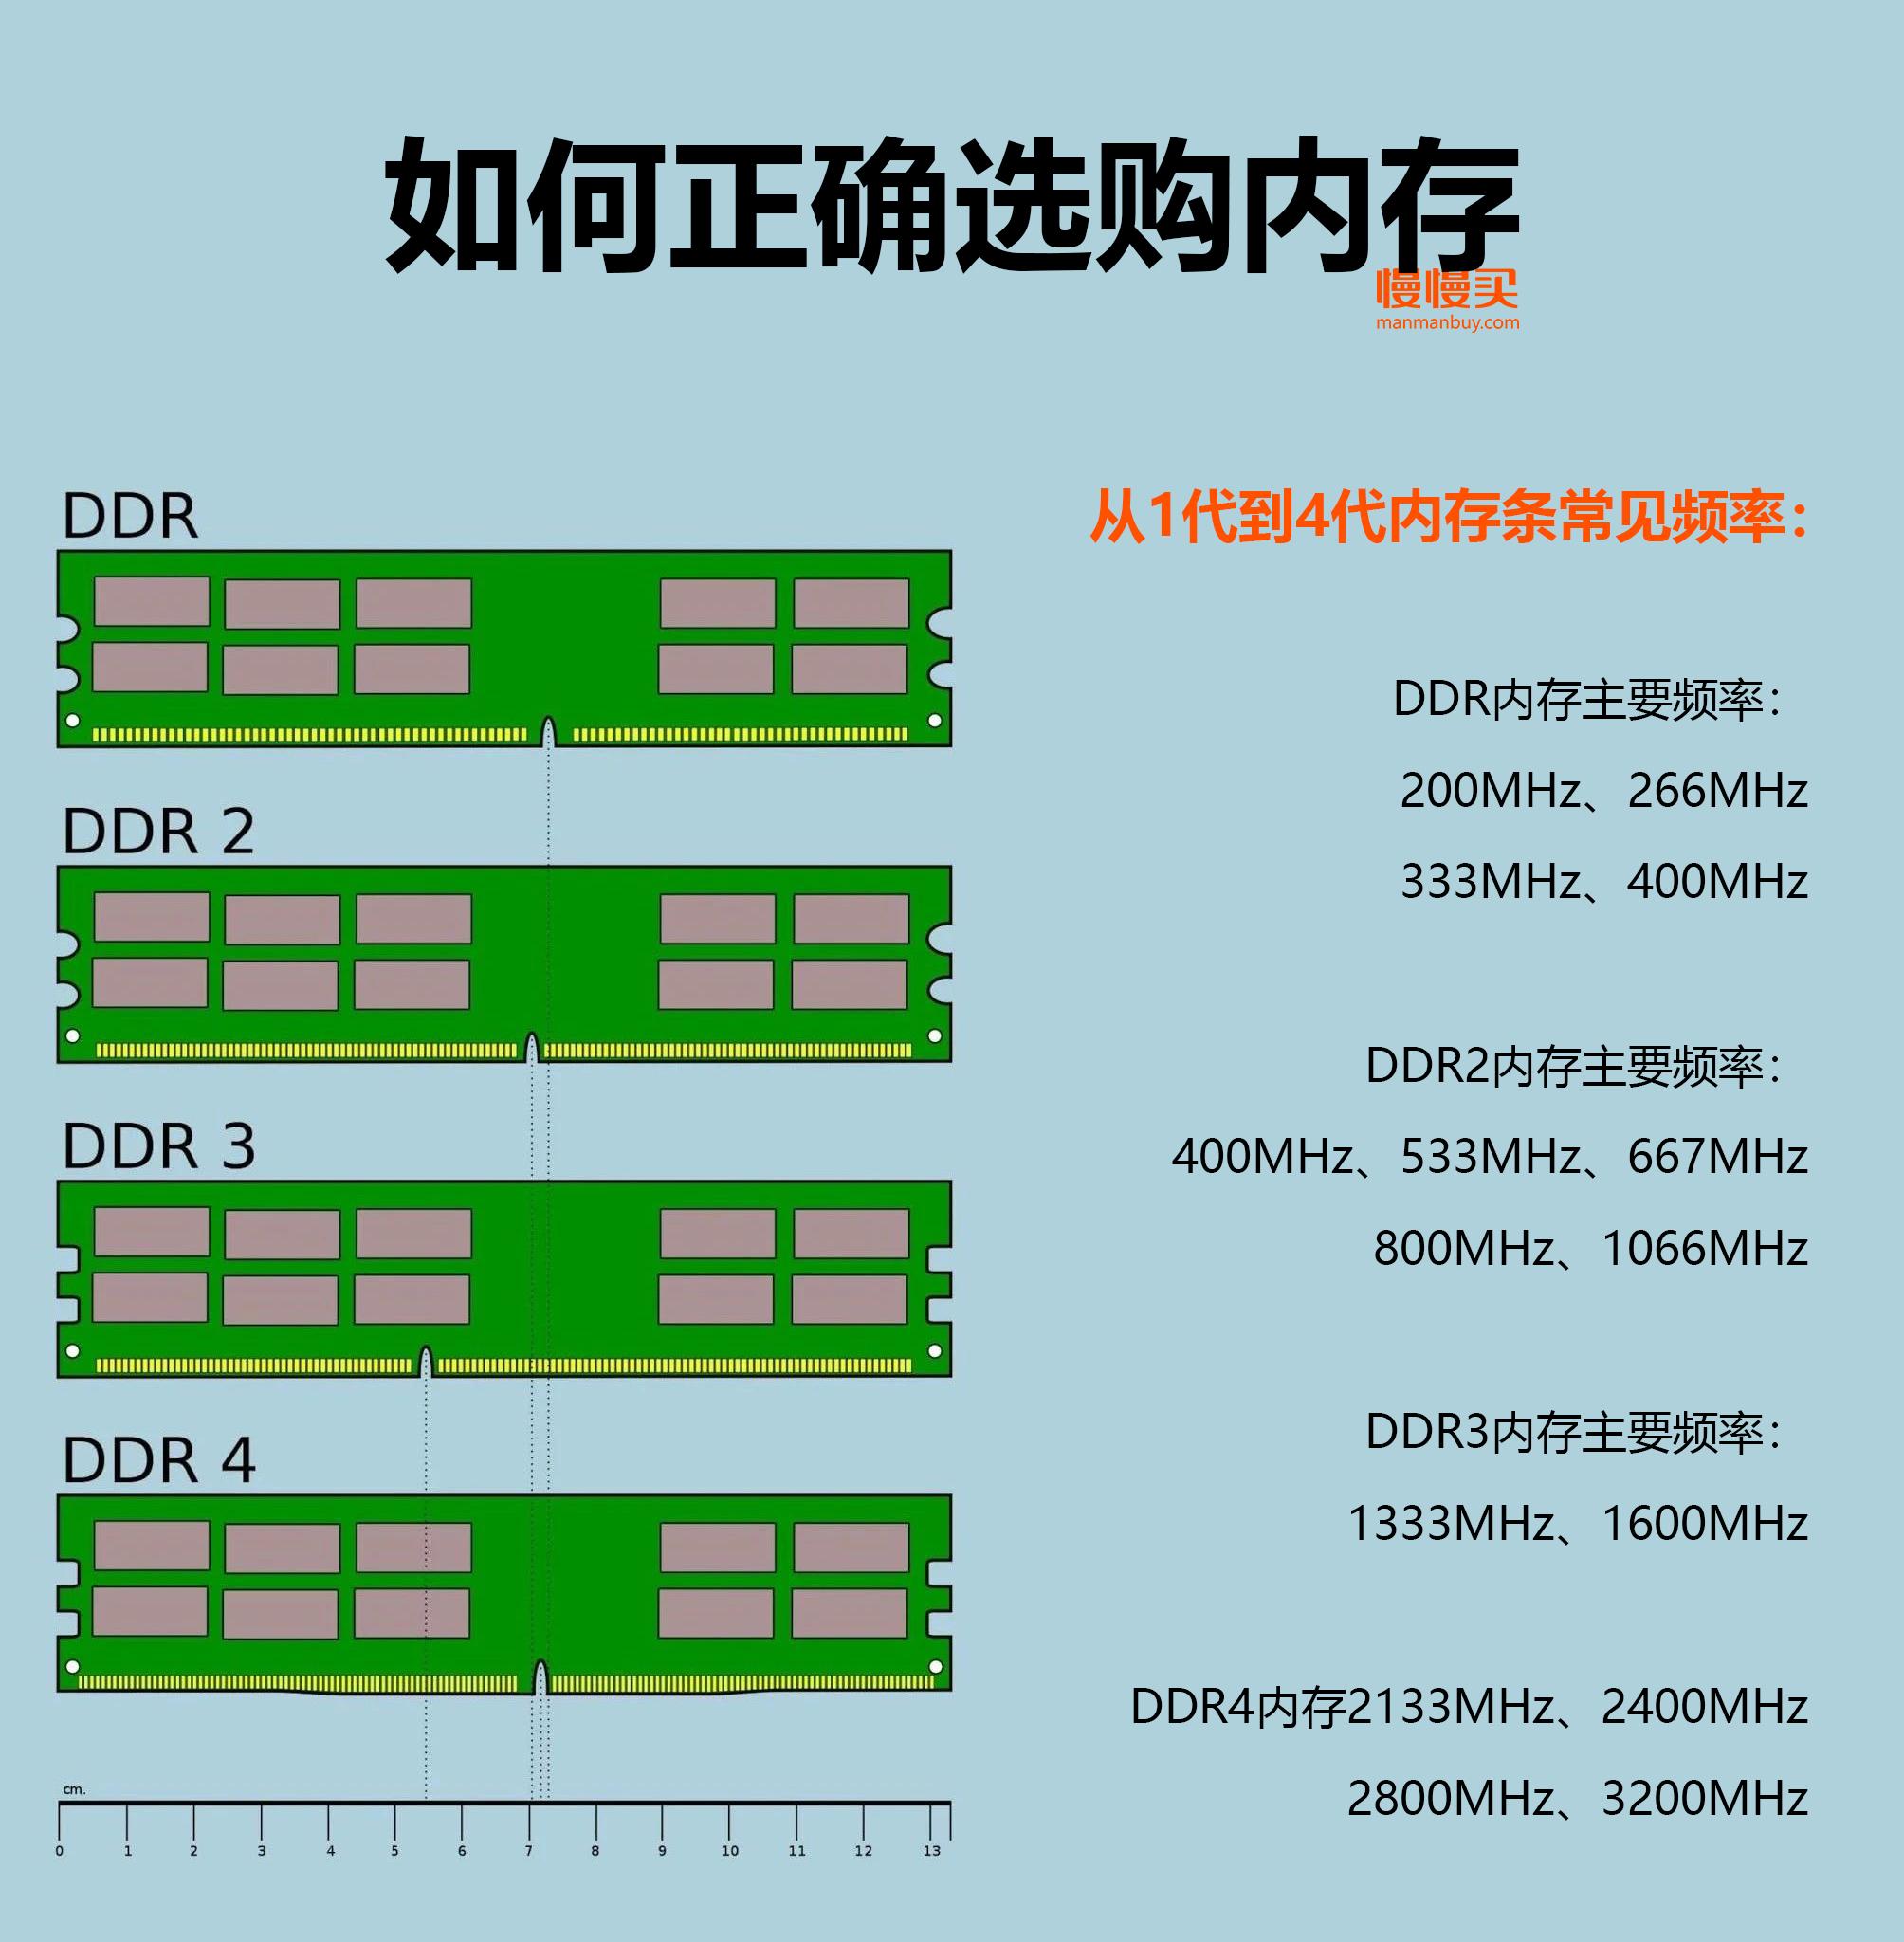 DDR6 内存即将到来，为何我选择保持观望？成本与效益的权衡  第2张